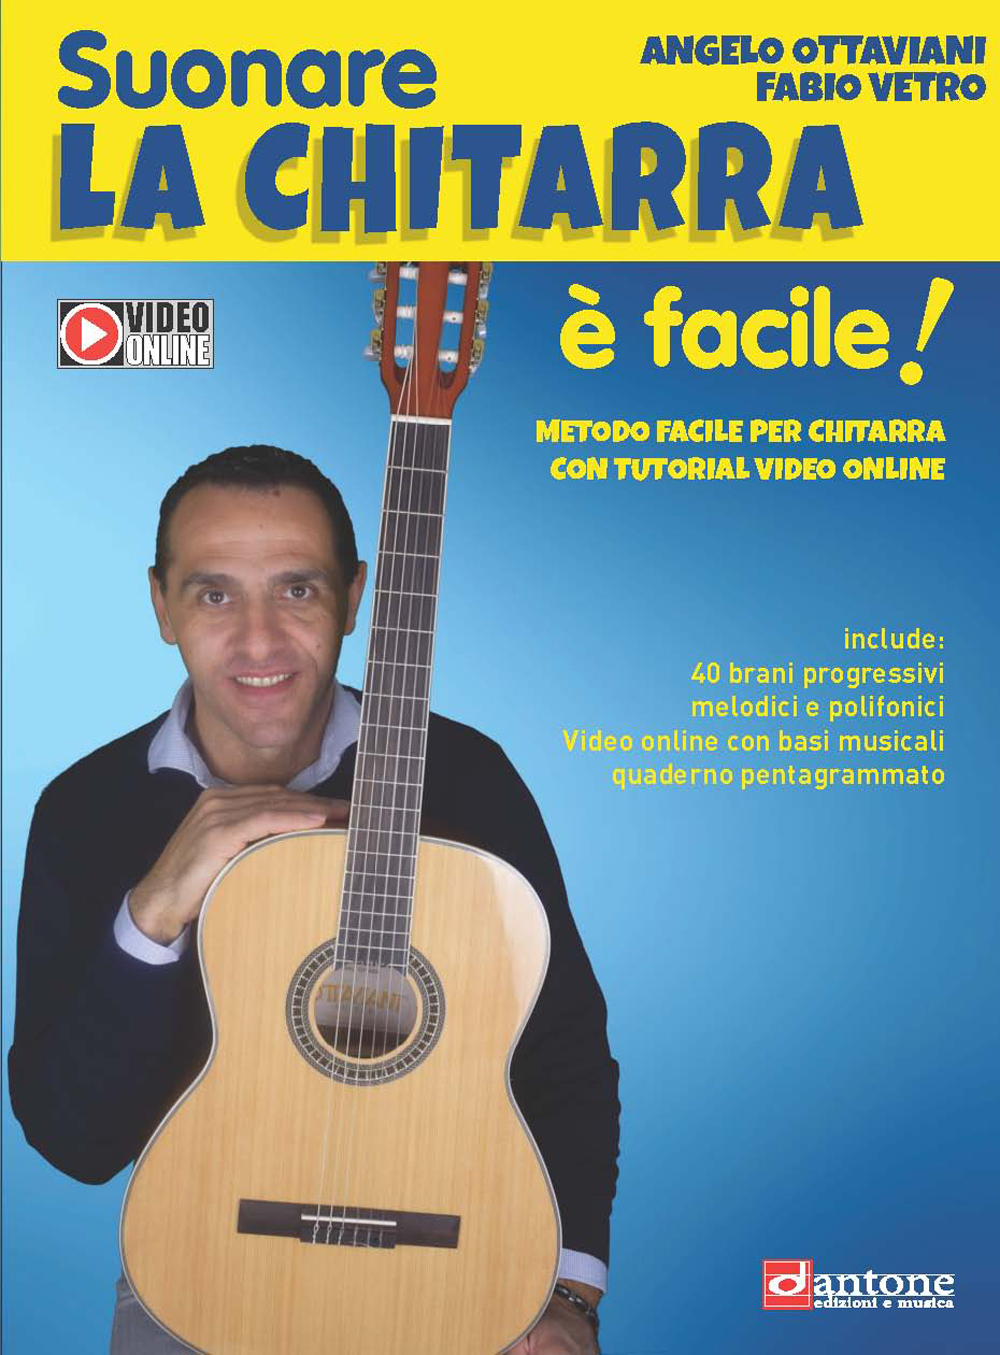 Angelo Ottaviani Fabio Vetro: Suonare La Chitarra  Facile!: Guitar: